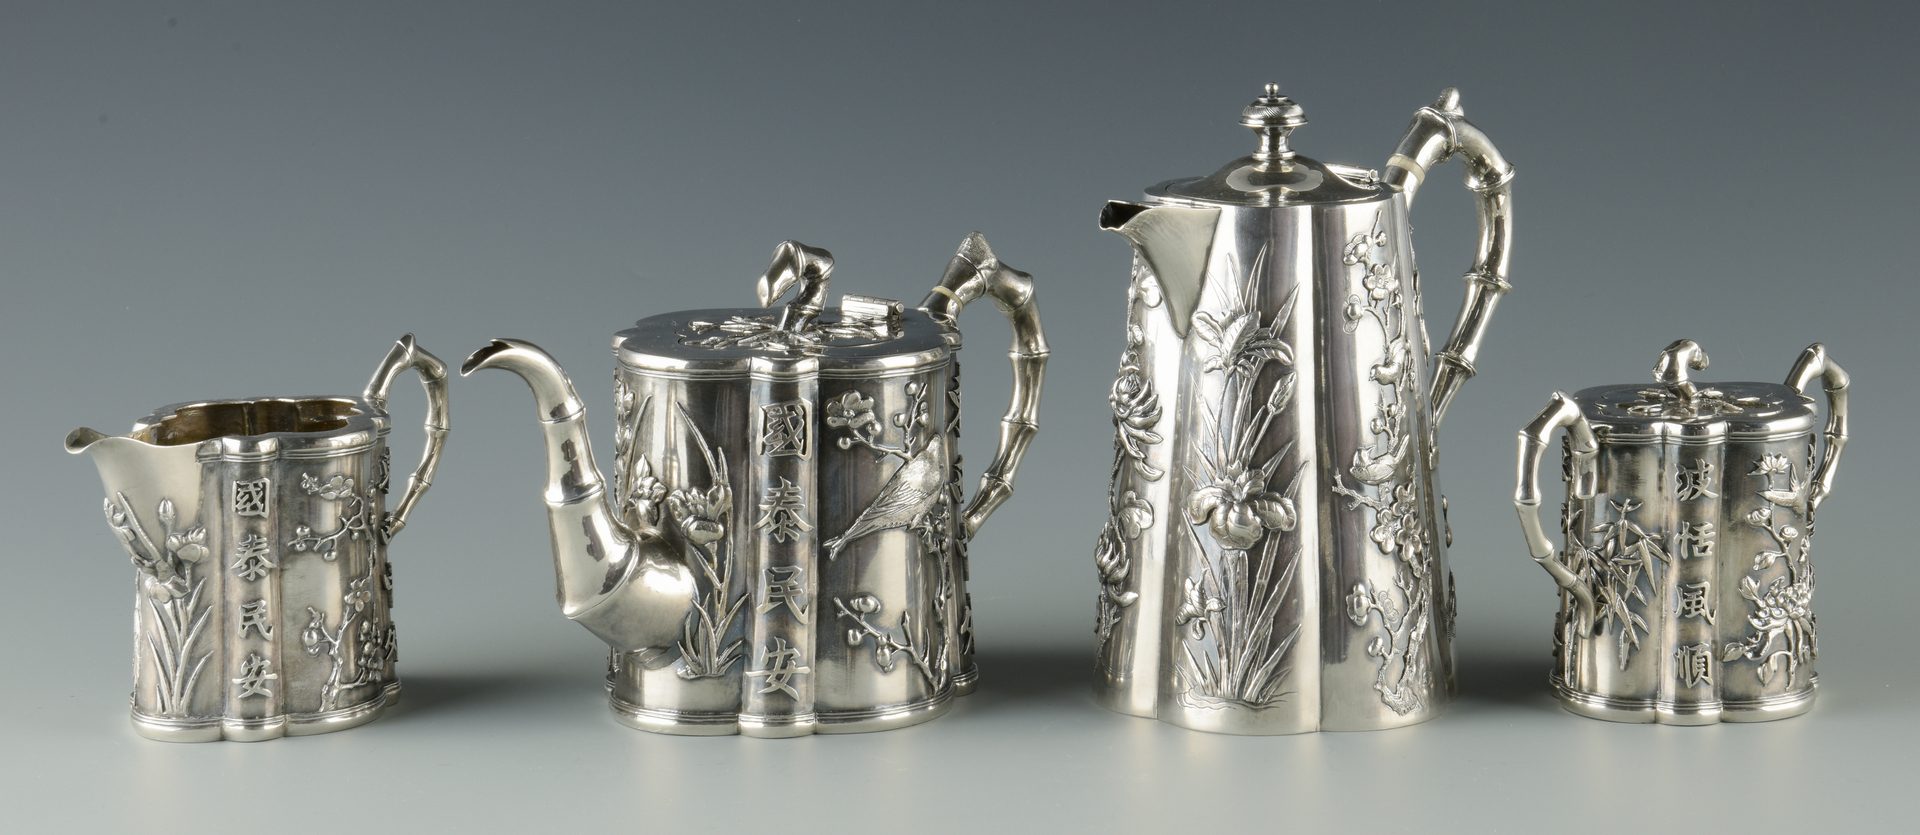 Lot 2: Chinese Export Silver Tea Set, 5 pcs, Wang Hing;